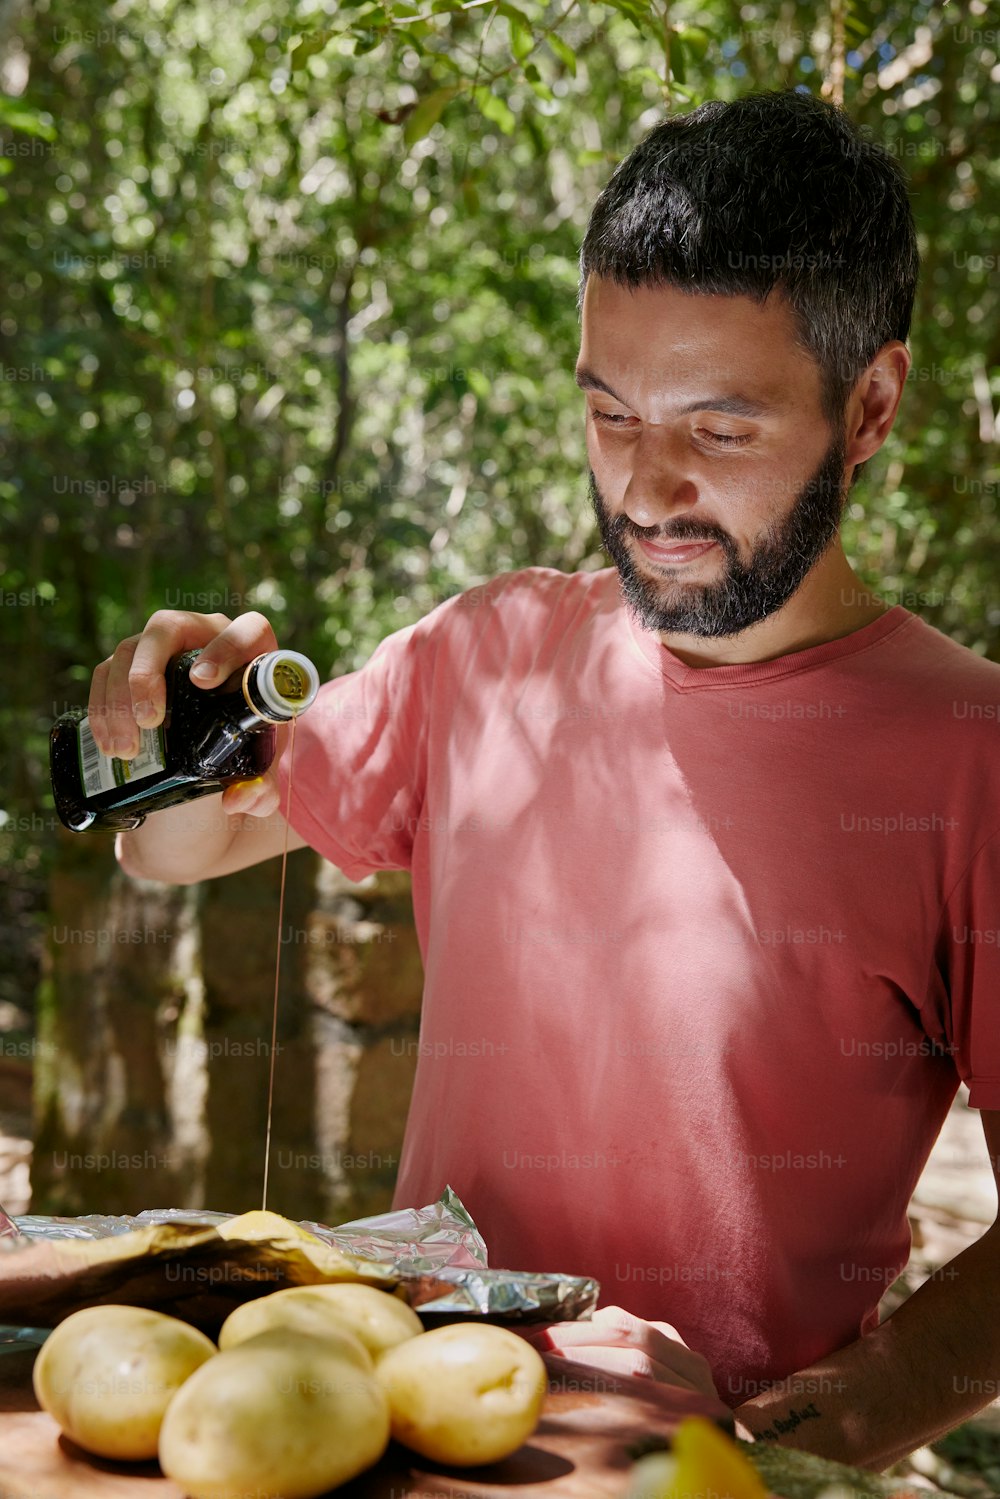 Un uomo con la barba sta versando qualcosa in una bottiglia